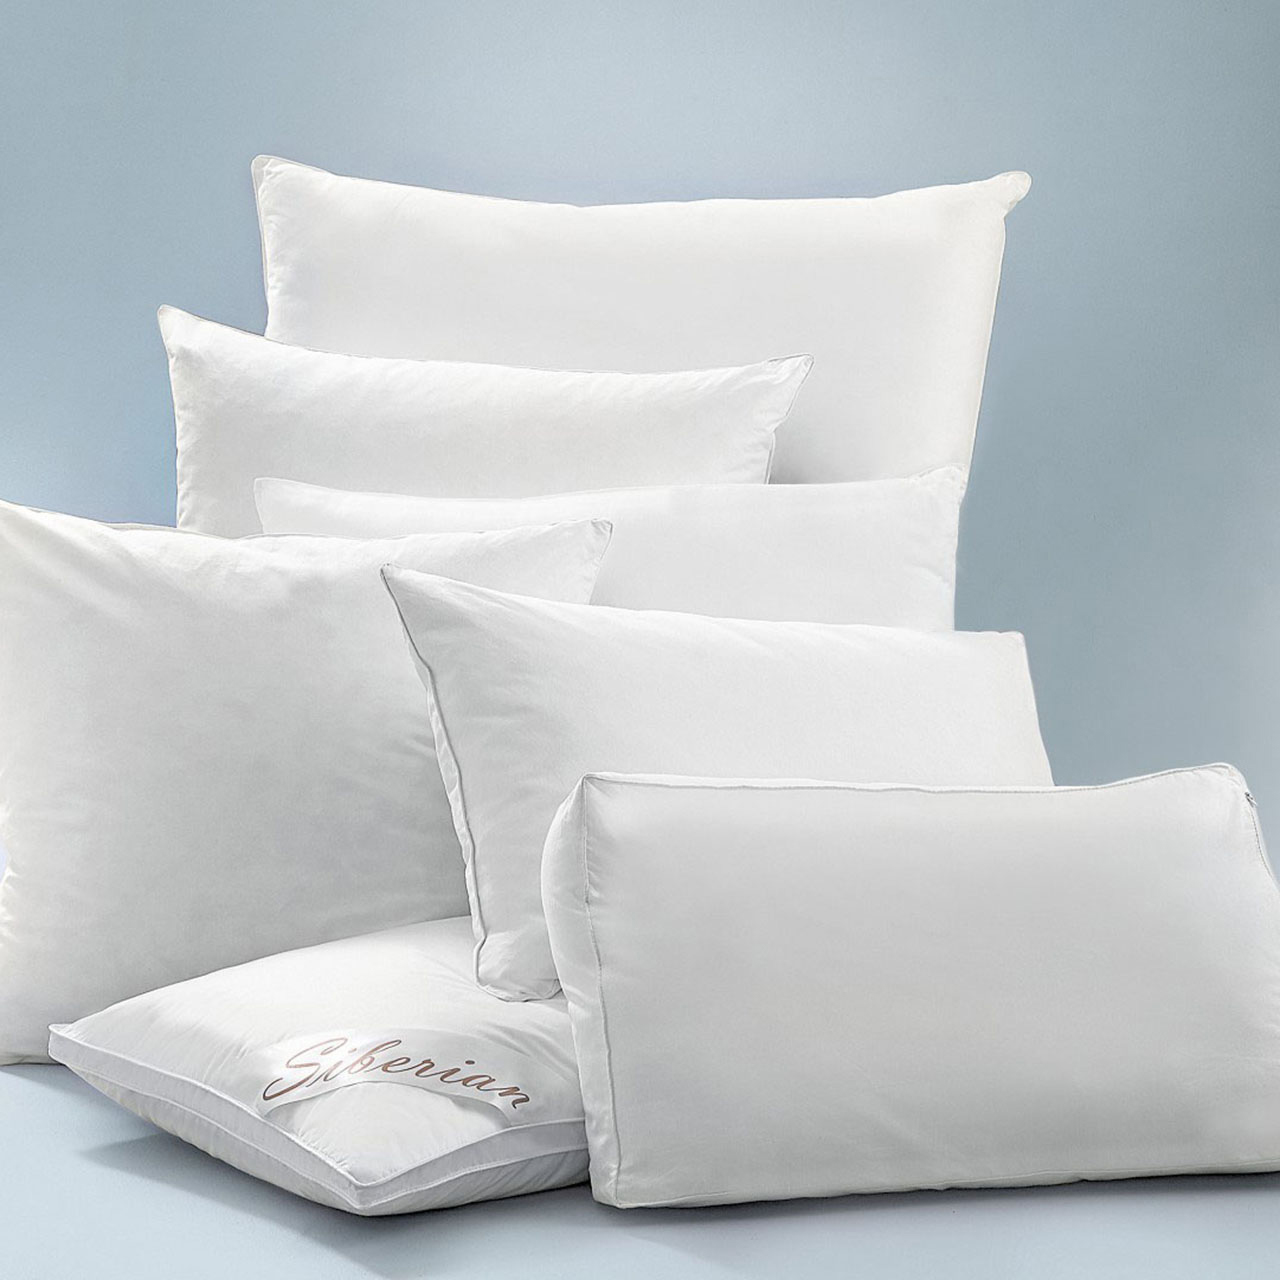 SpringfreshT Anti Allergy Pillow